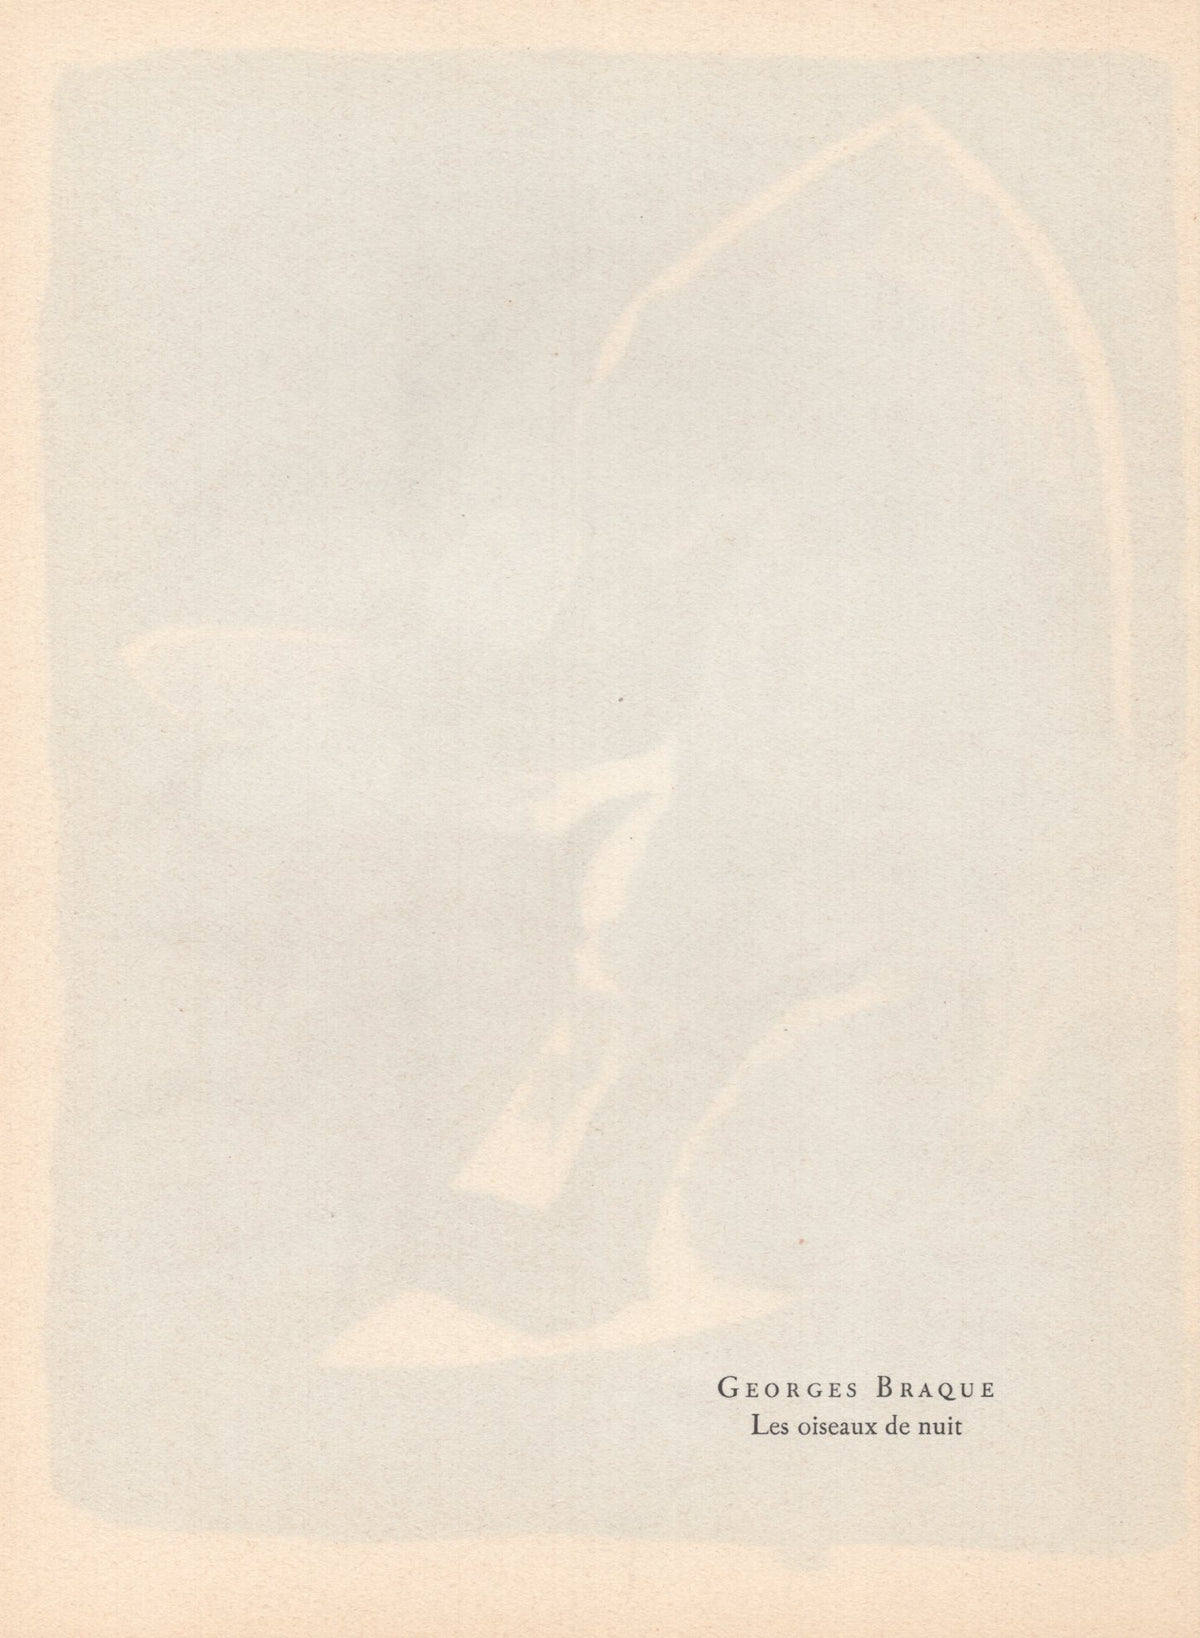 Georges Braque - &quot;Les oiseaux de nuit&quot; - Mourlot Press 1964 Lithograph - 7.5 x 10&quot;